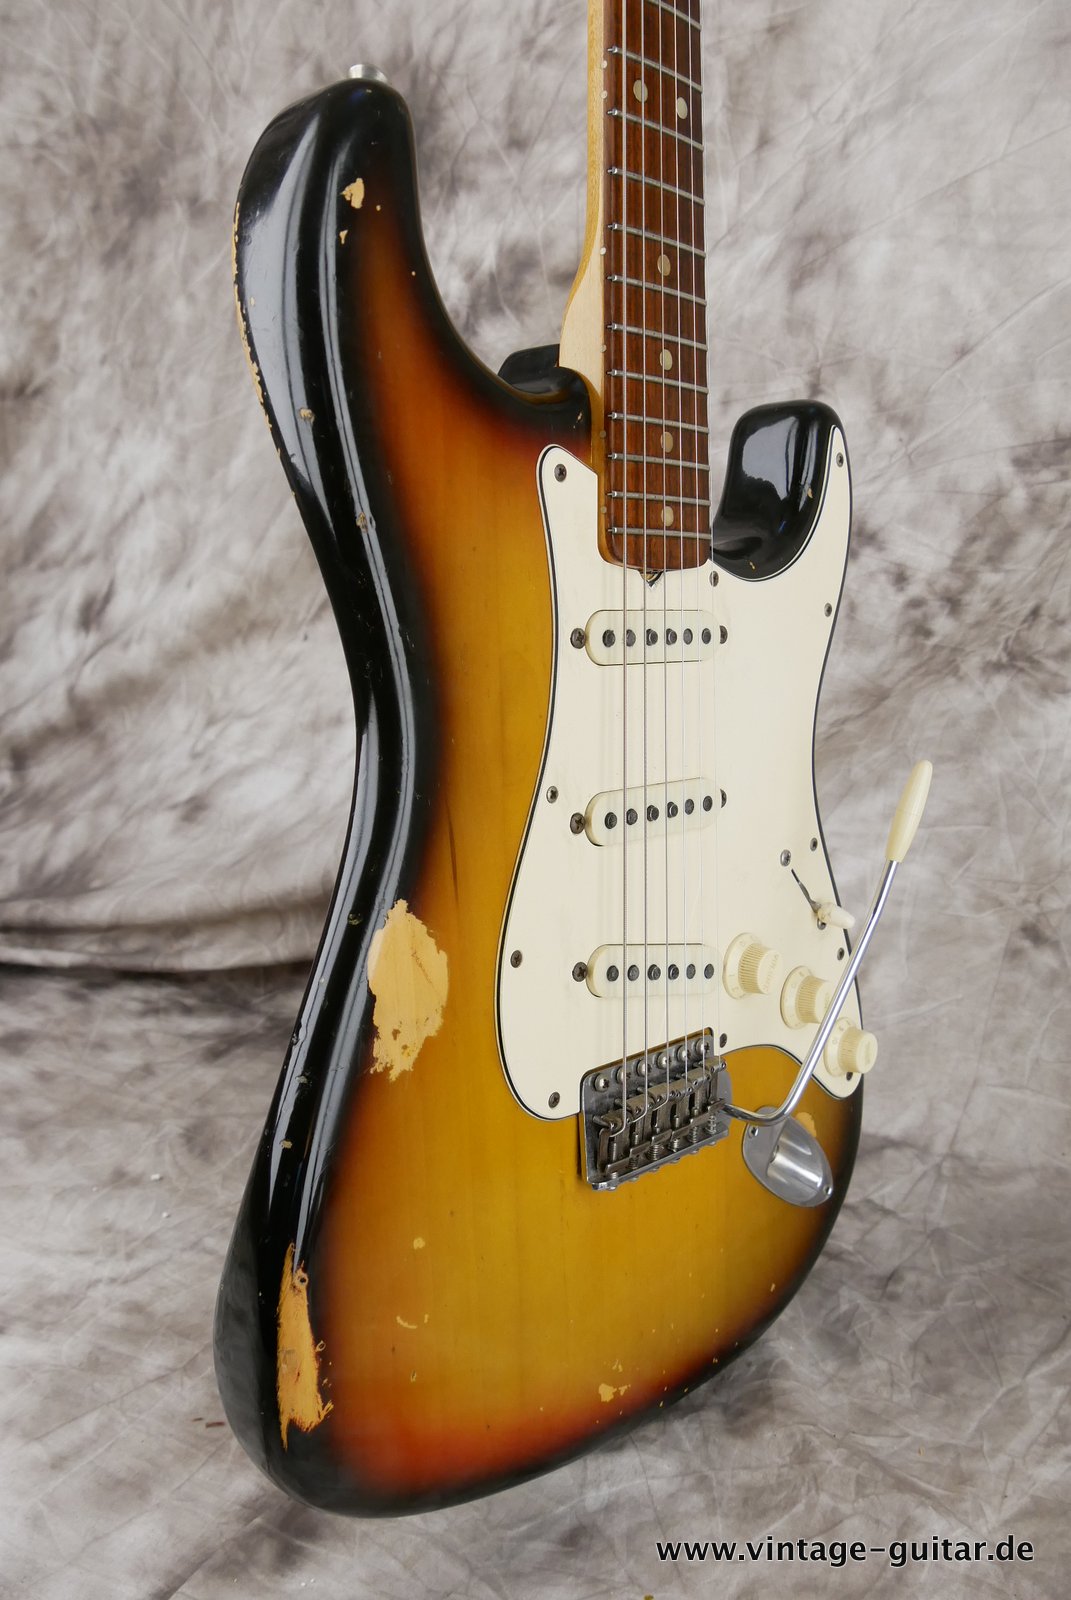 Fender-Stratocaster-1972-sunburst-4-hole-005.JPG